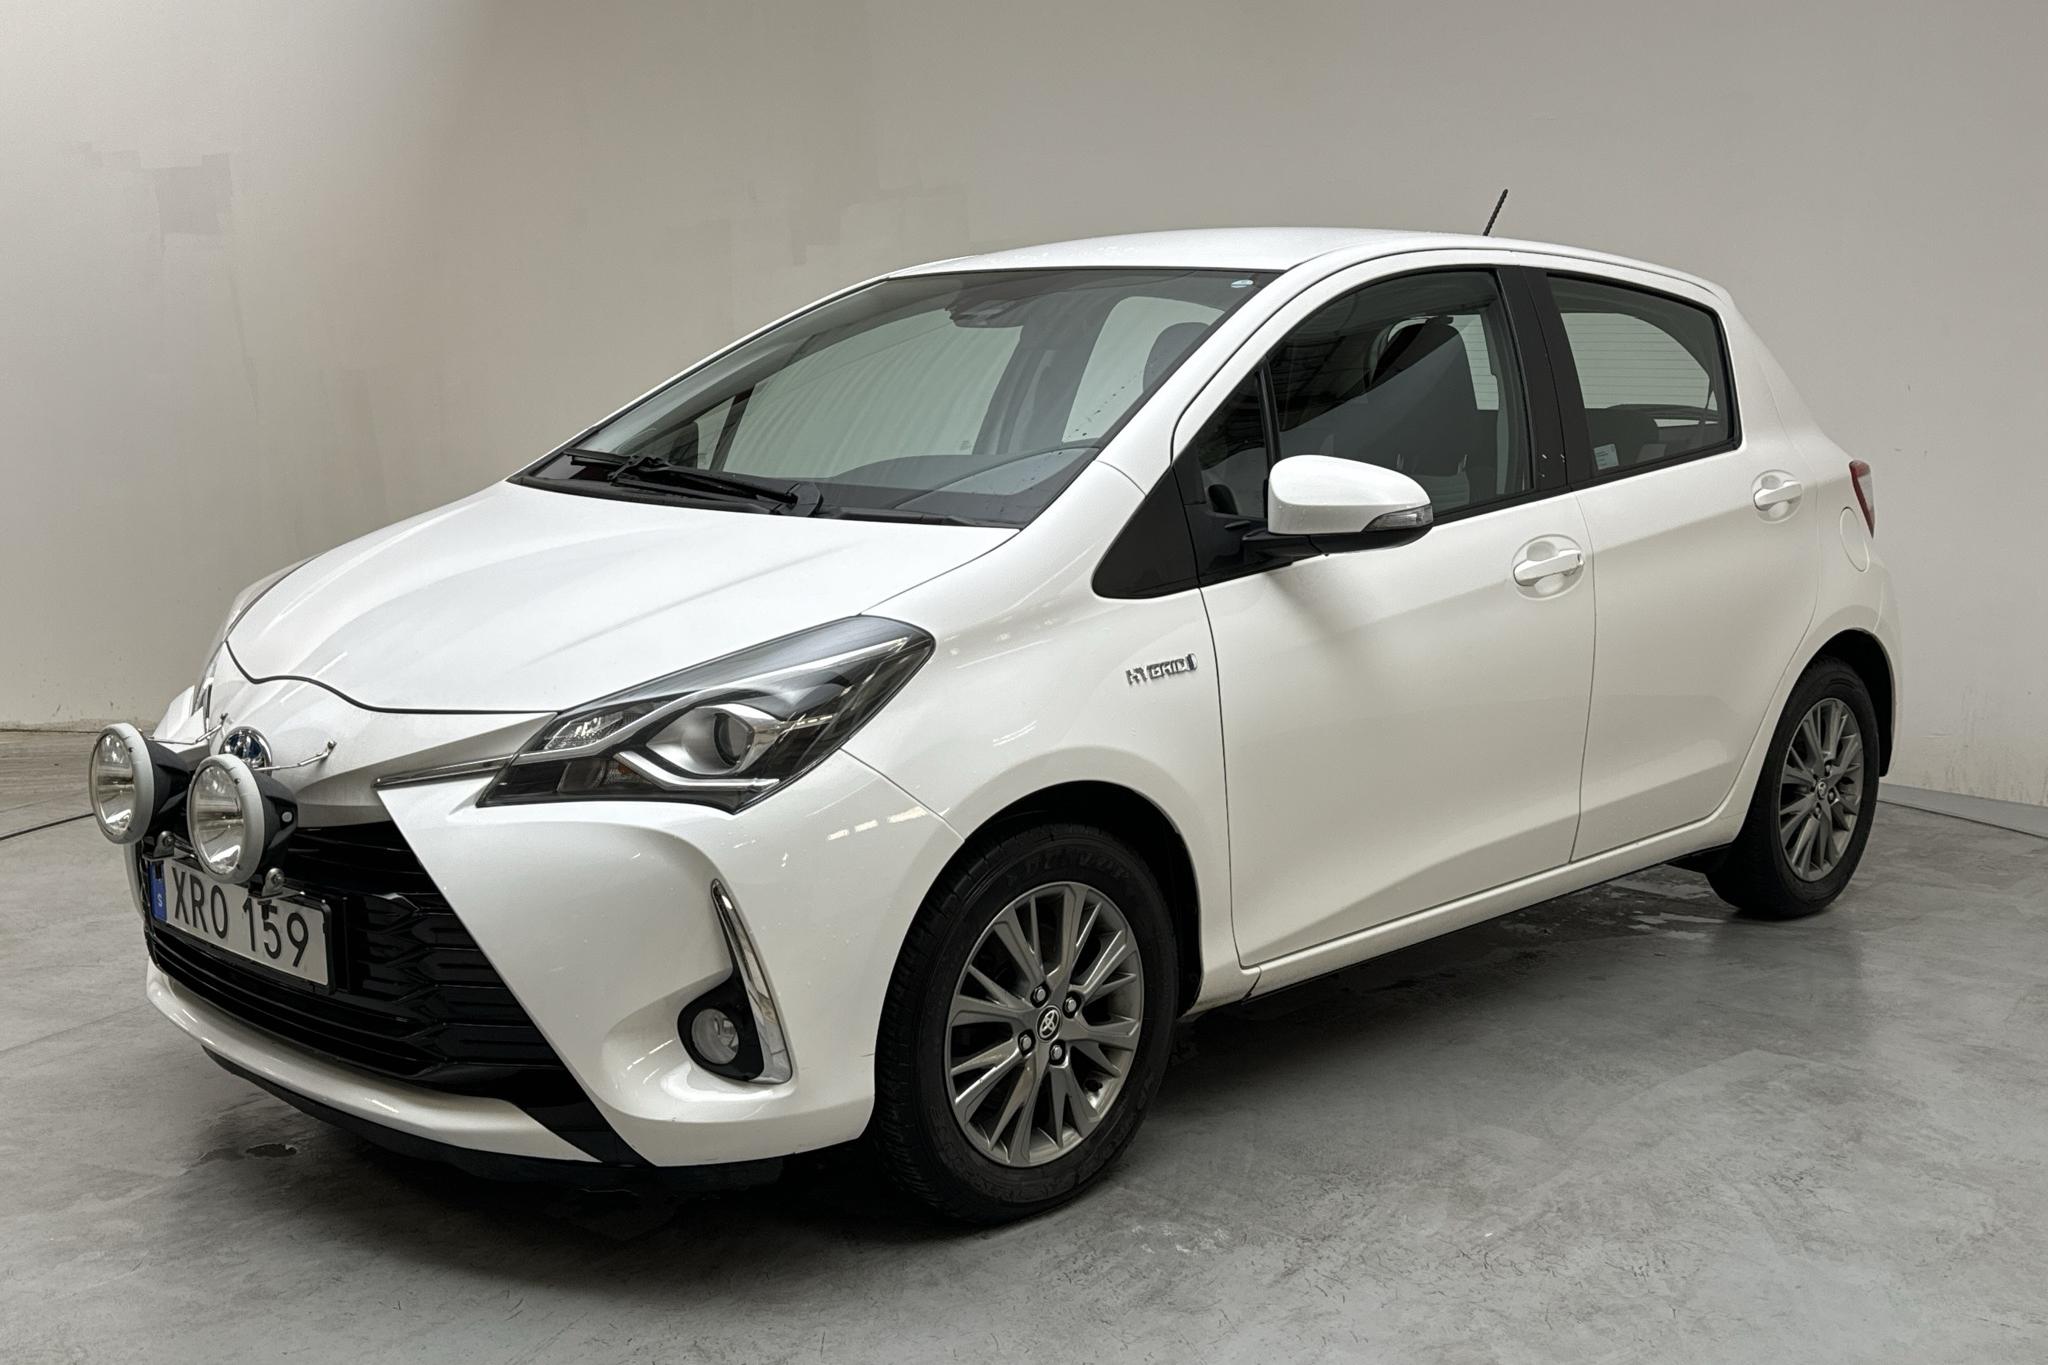 Toyota Yaris 1.5 Hybrid 5dr (101hk) - 179 650 km - Automaattinen - valkoinen - 2018